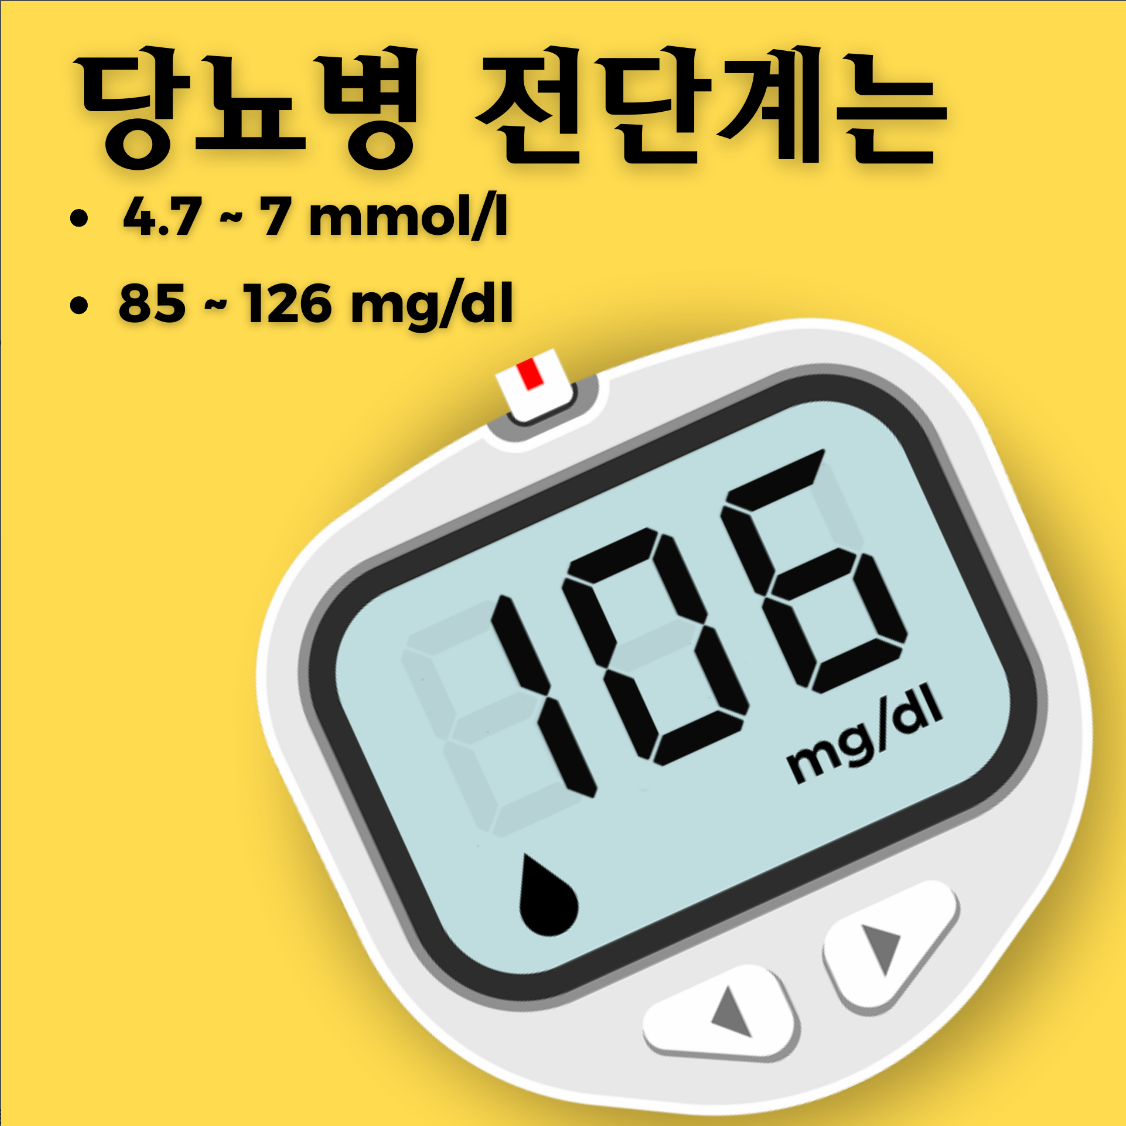 혈당측정기 : 당뇨측정기 &혈당 기록